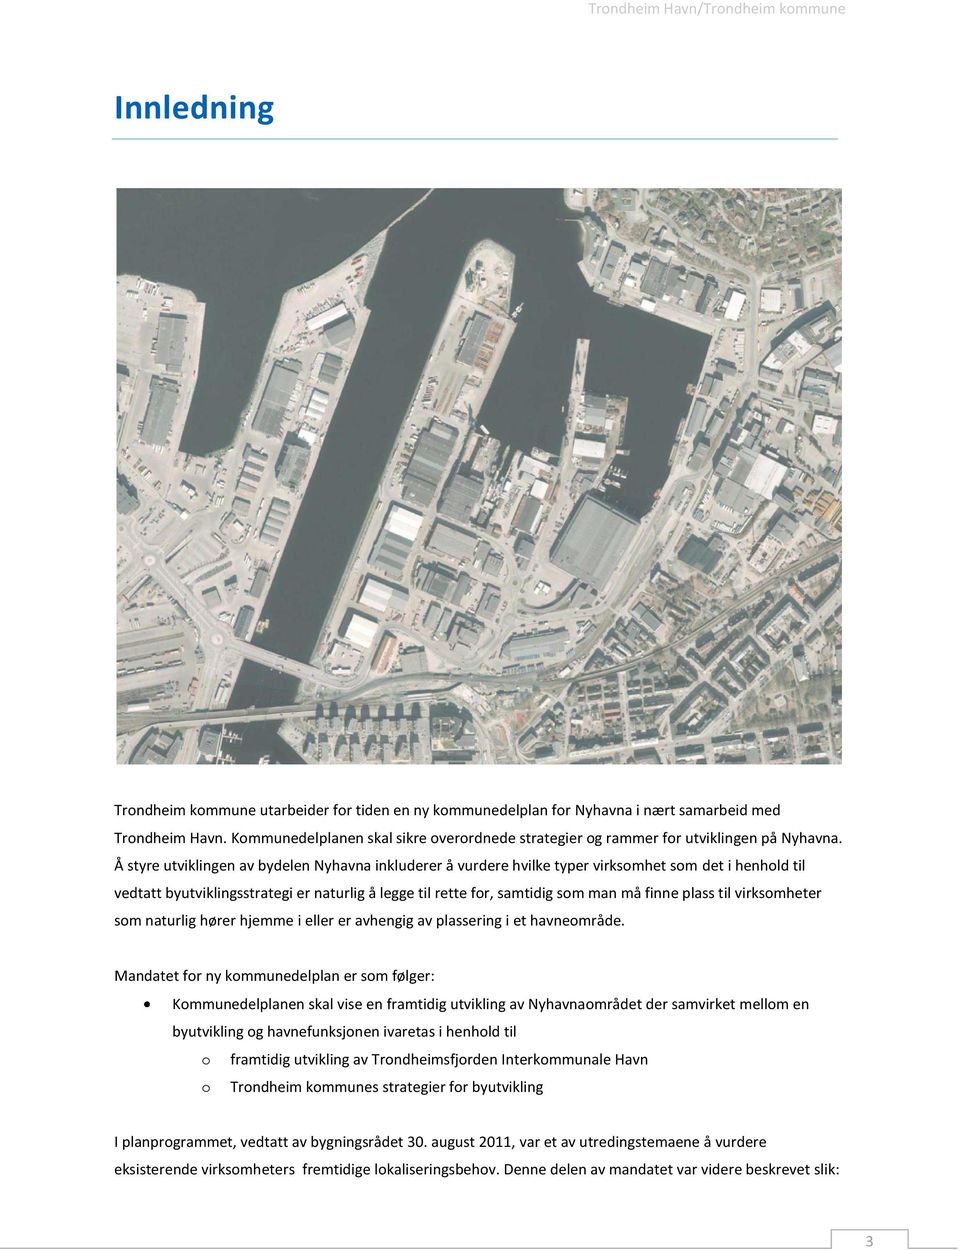 Å styre utviklingen av bydelen Nyhavna inkluderer å vurdere hvilke typer virksomhet som det i henhold til vedtatt byutviklingsstrategi er naturlig å legge til rette for, samtidig som man må finne